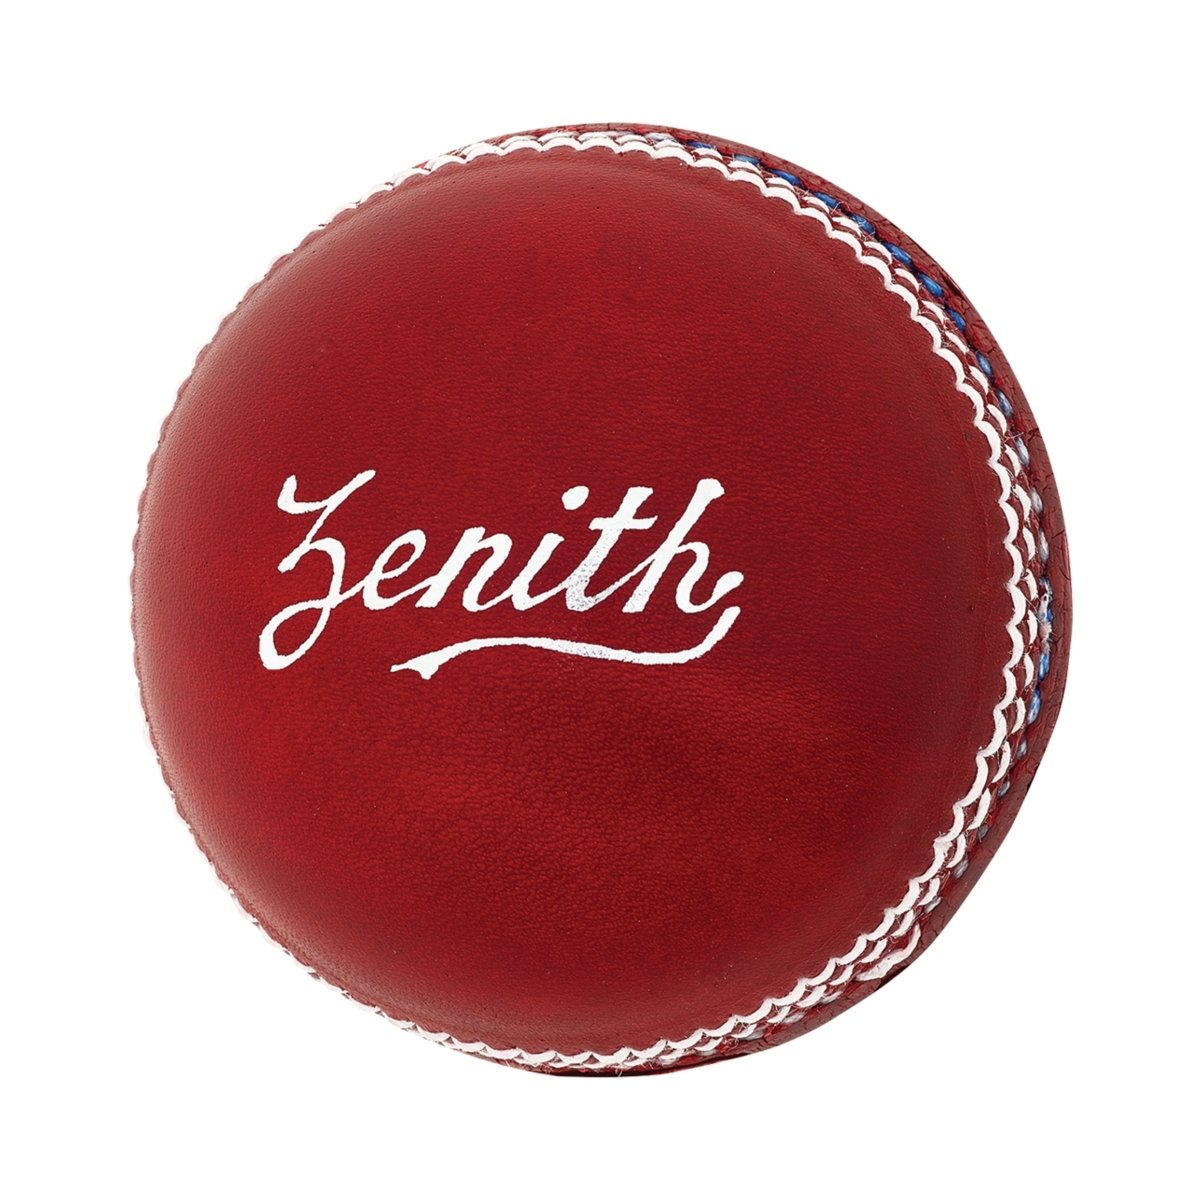 Kookaburra Zenith Cricket Ball - Acrux Sports